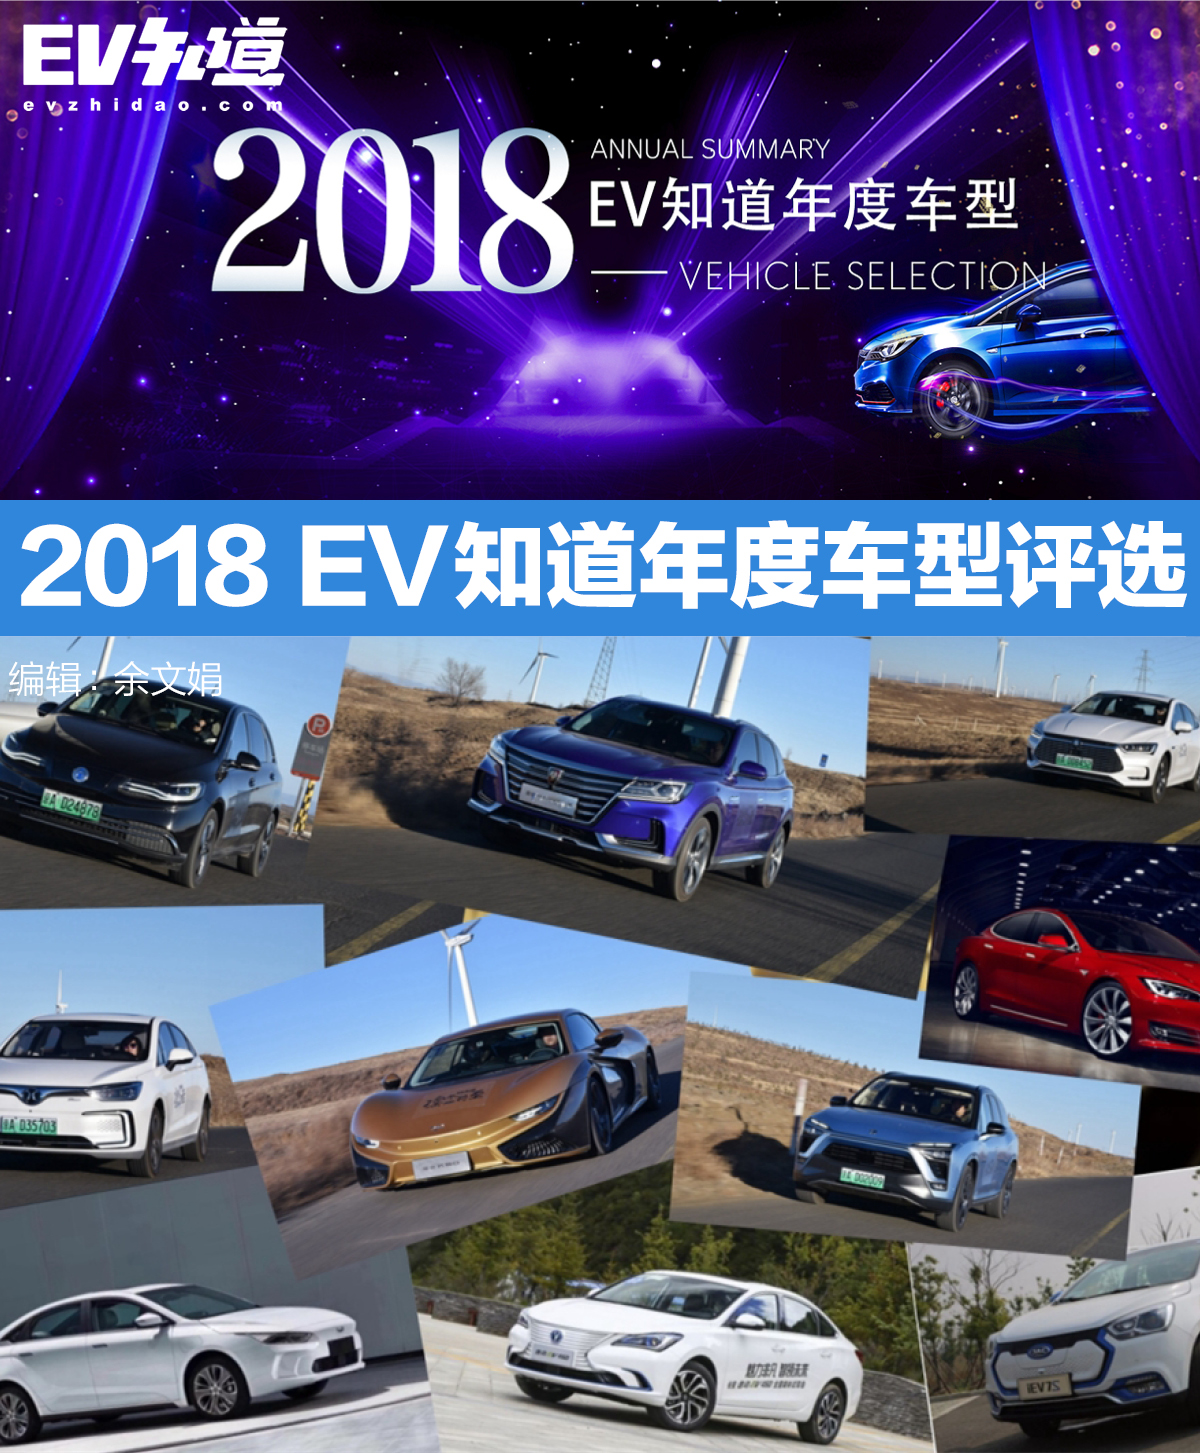 花落谁家 2018 EV知道年度车型评选